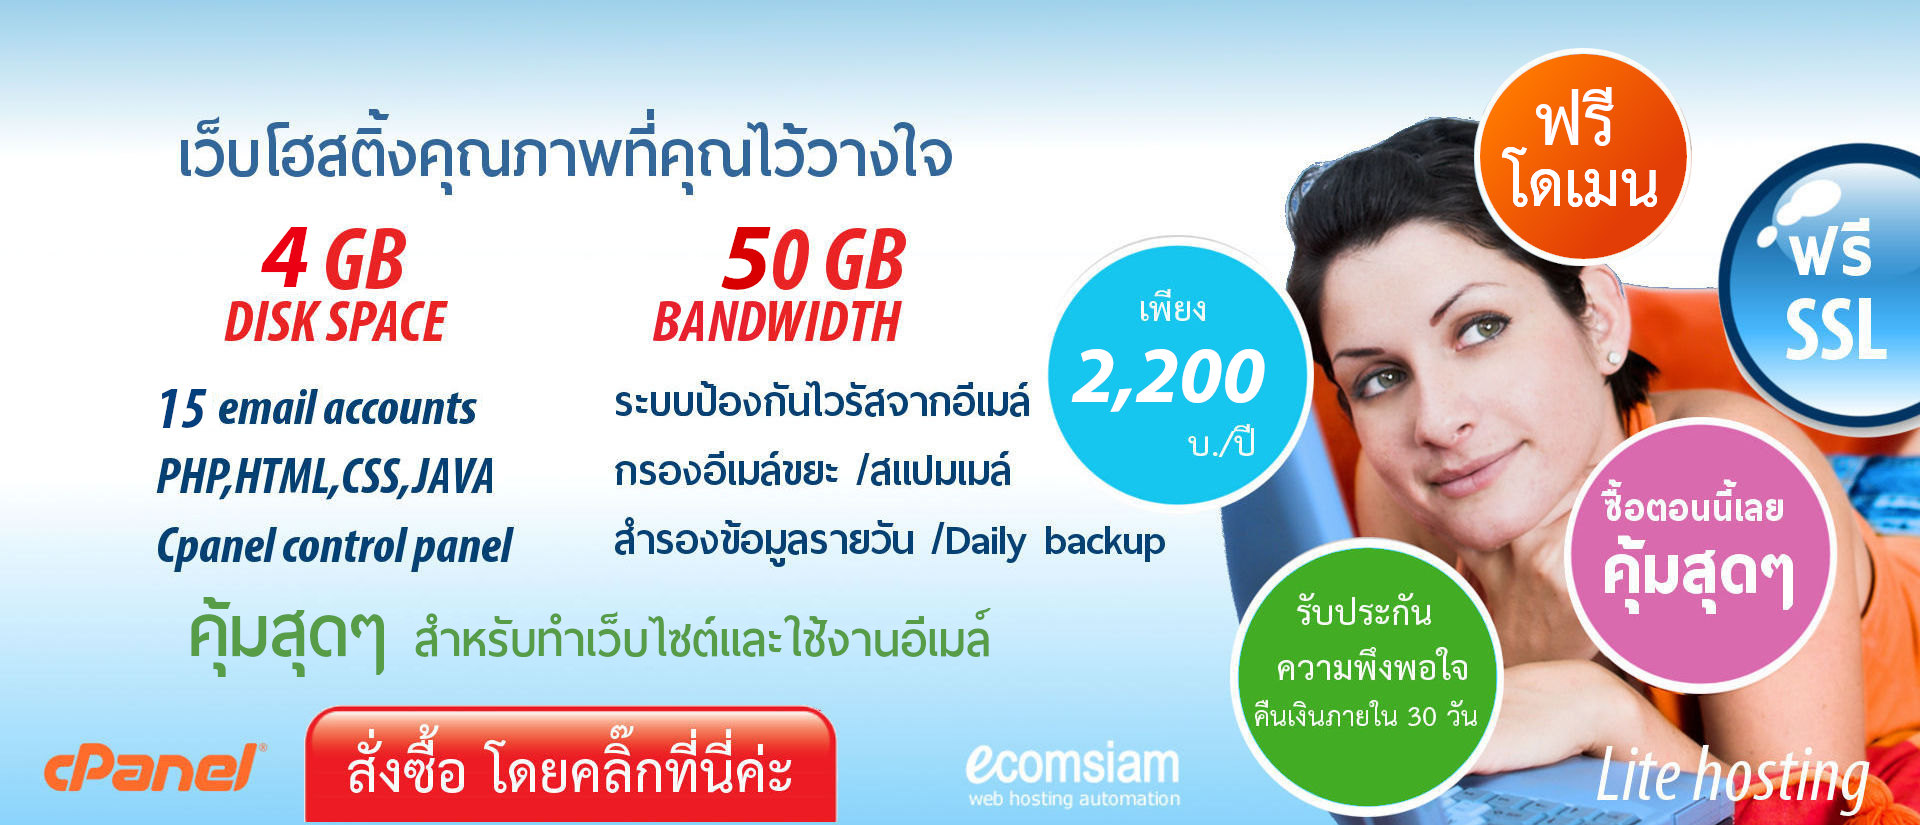 ฟรีโดเมน สำหรับ web hosting thailand -liteplan เว็บโฮสติ้งไทย ราคาเบาๆ ฟรี SSL เพียง 2,200 บาทต่อปี